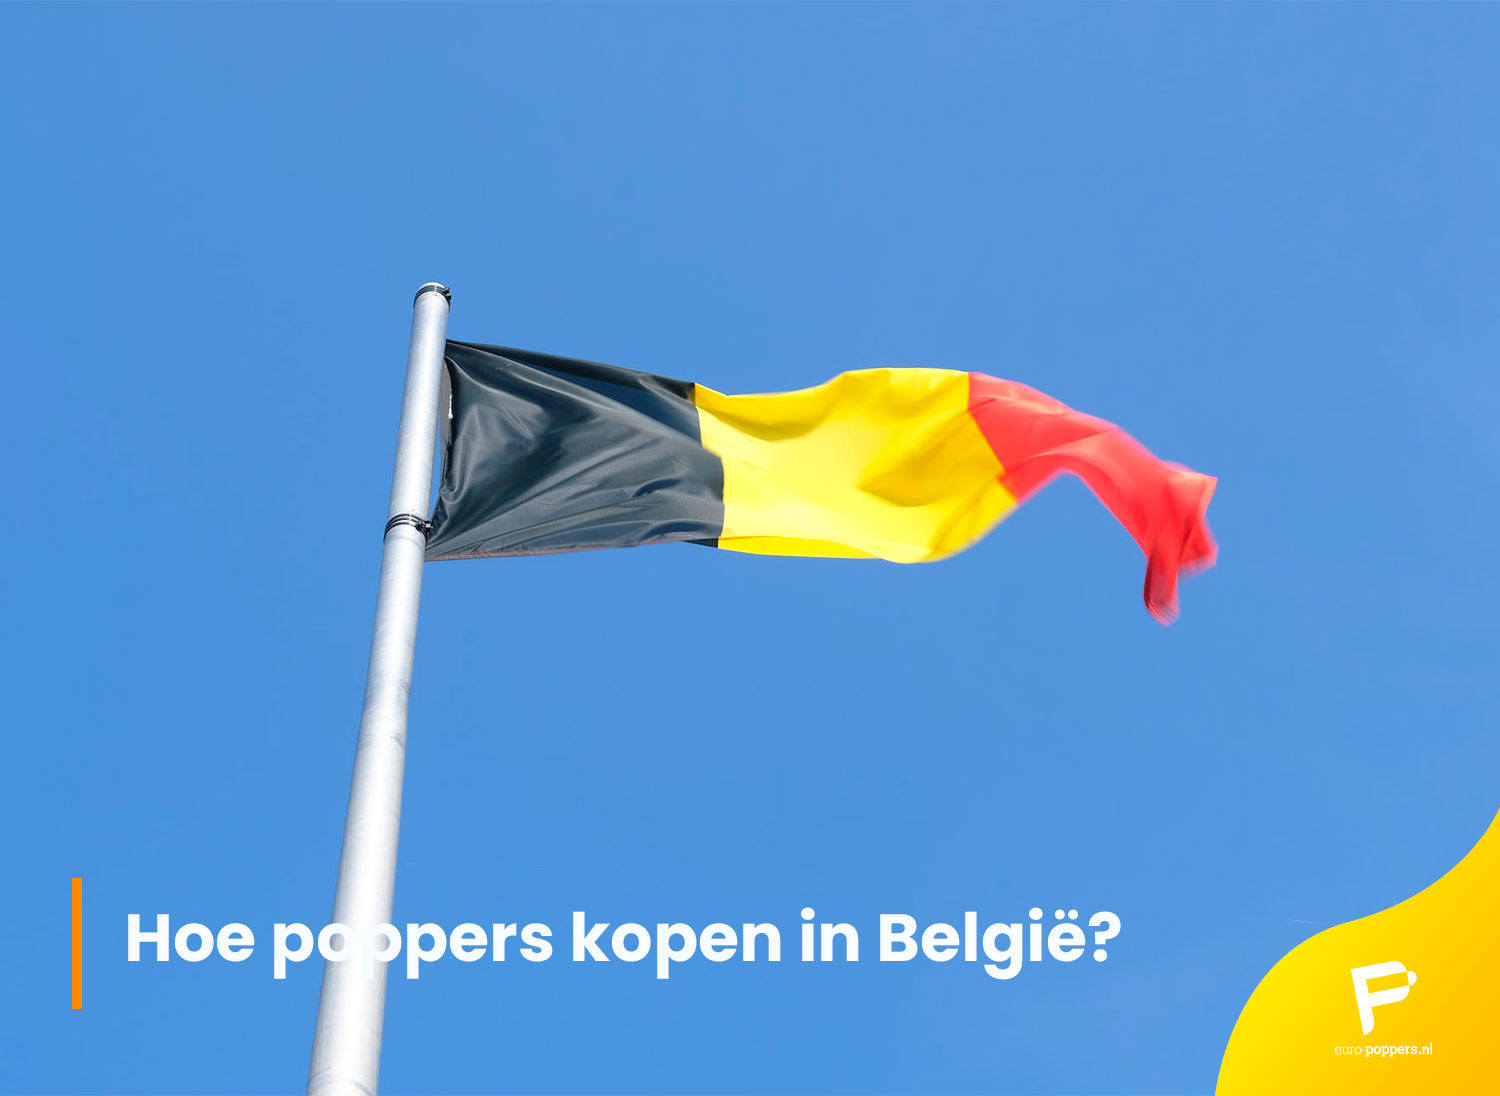 Je bekijkt nu Hoe poppers kopen in België?